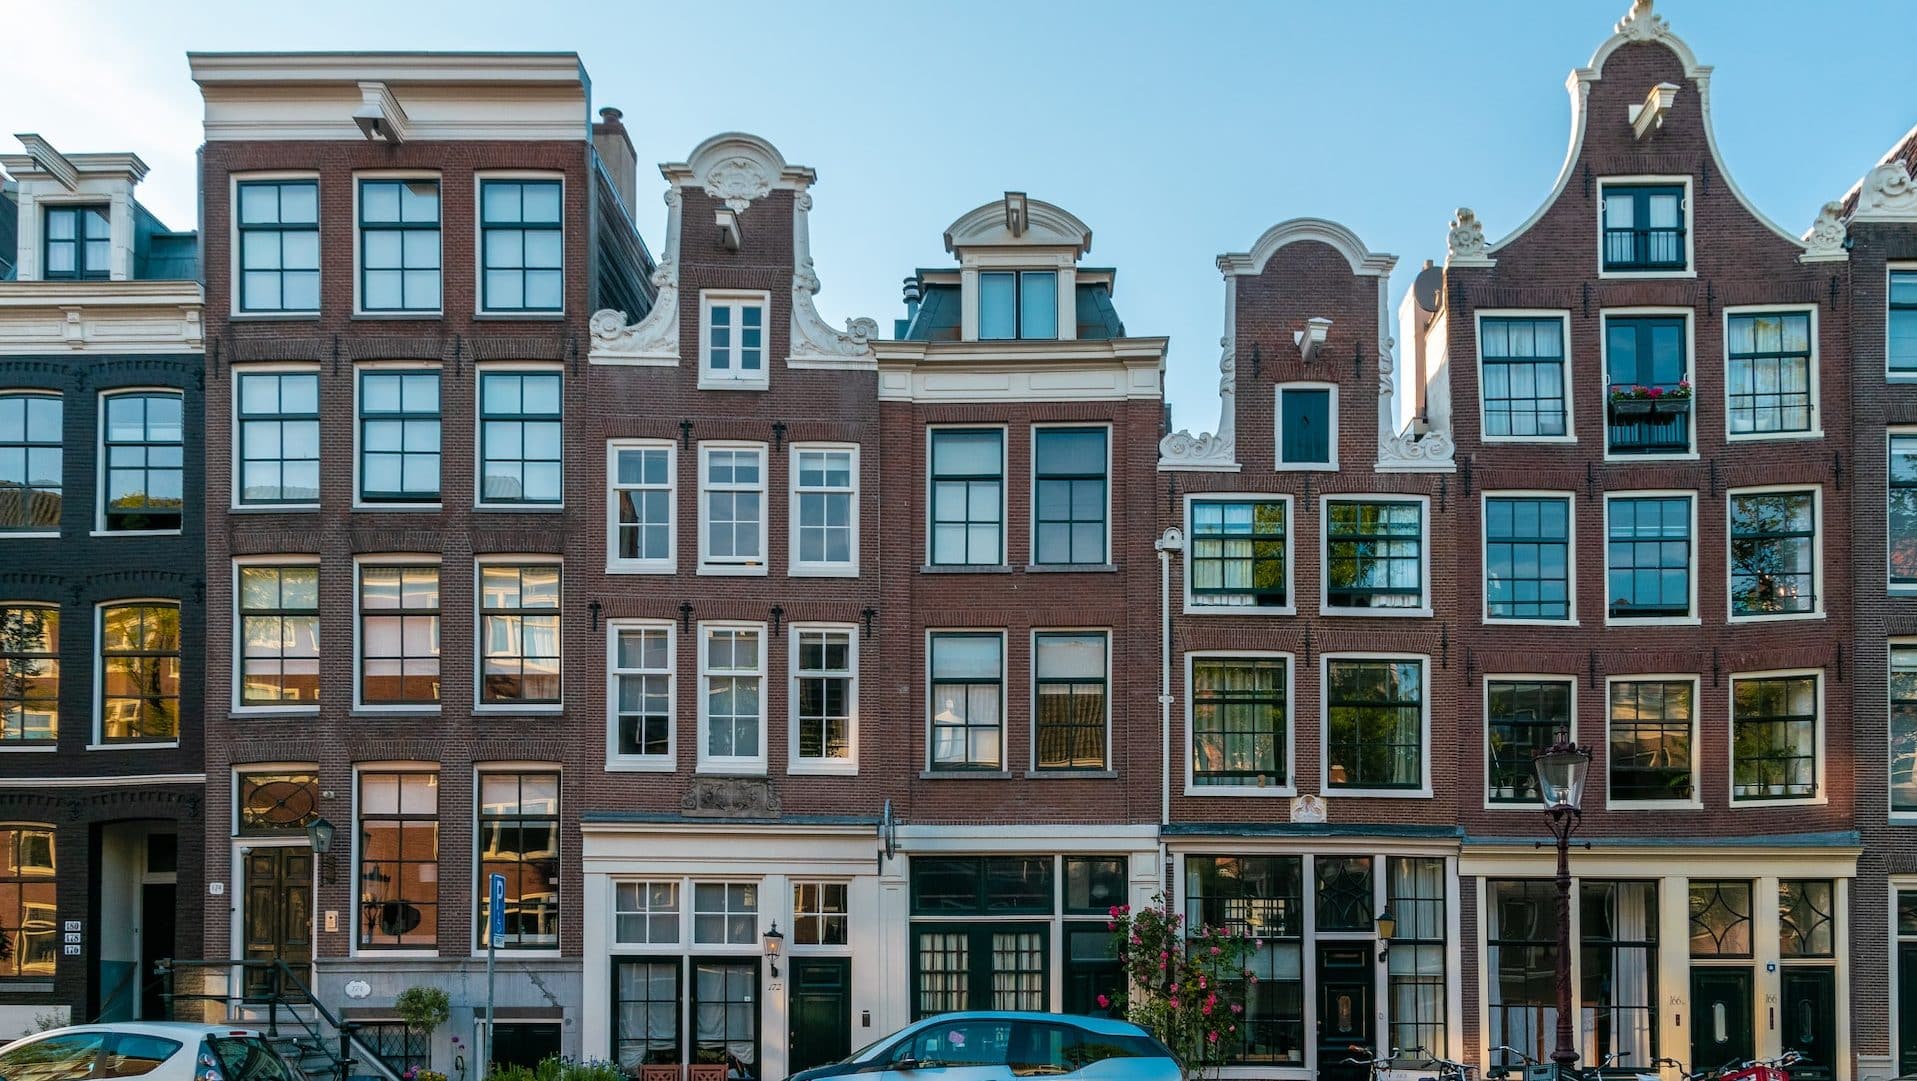 Tipica architettura in stile olandese nel quartiere Jordaan